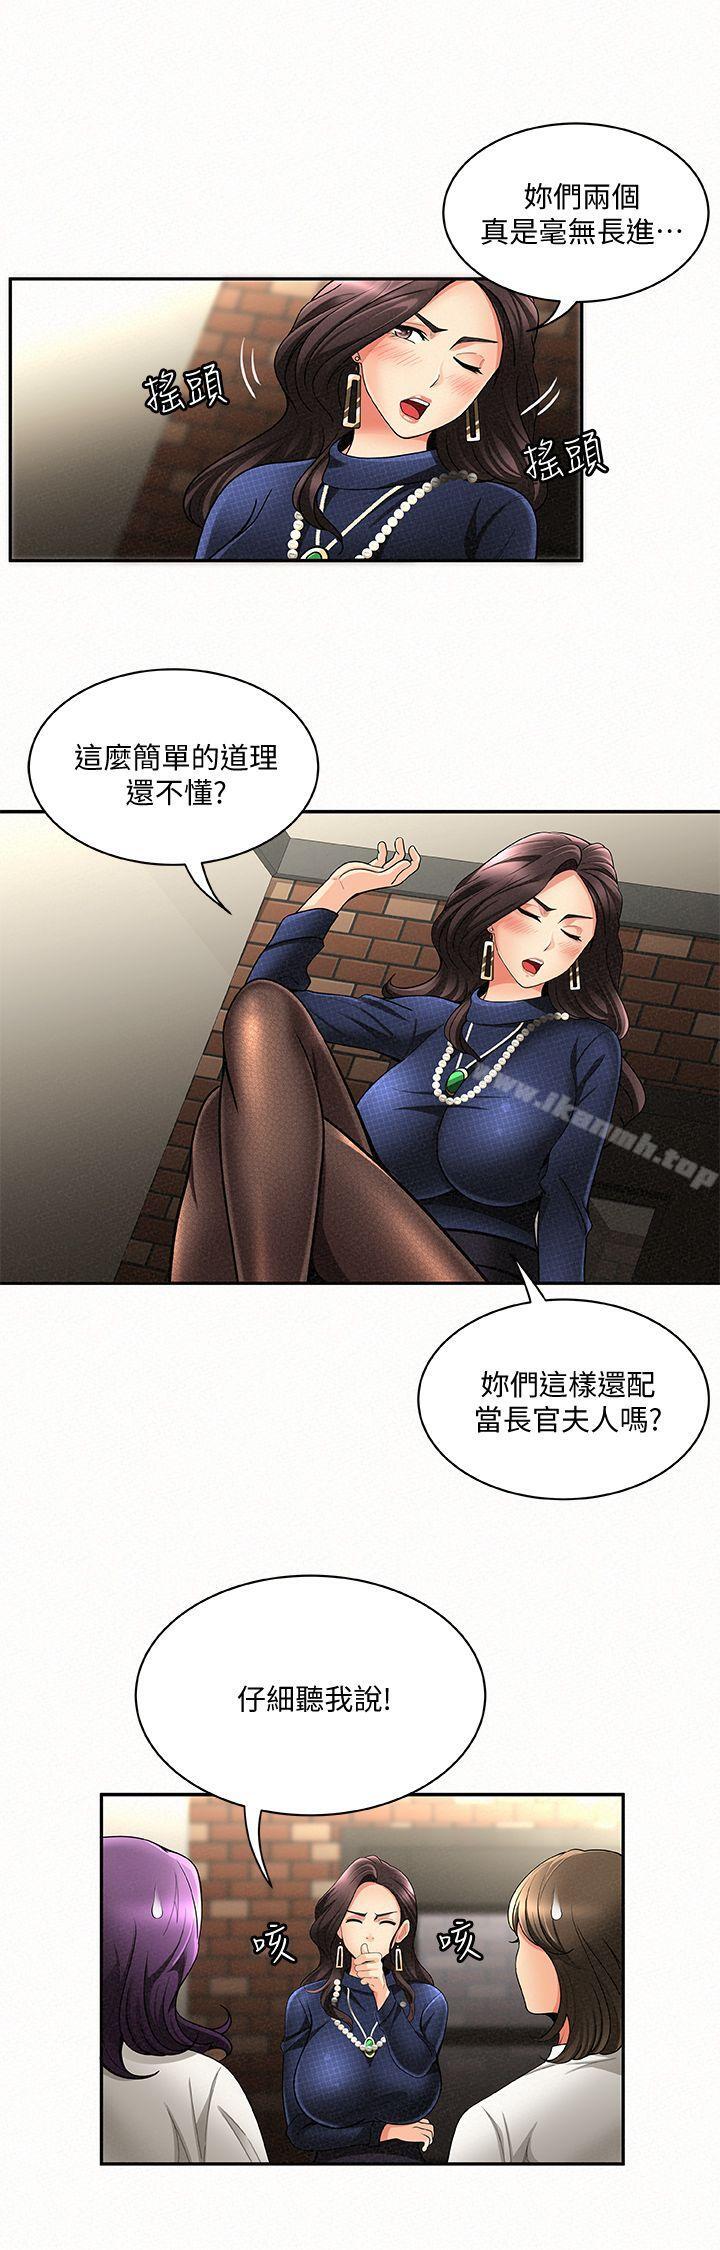 韩国漫画报告夫人韩漫_报告夫人-第3话-想不想嚐嚐其他有夫之妇?在线免费阅读-韩国漫画-第14张图片